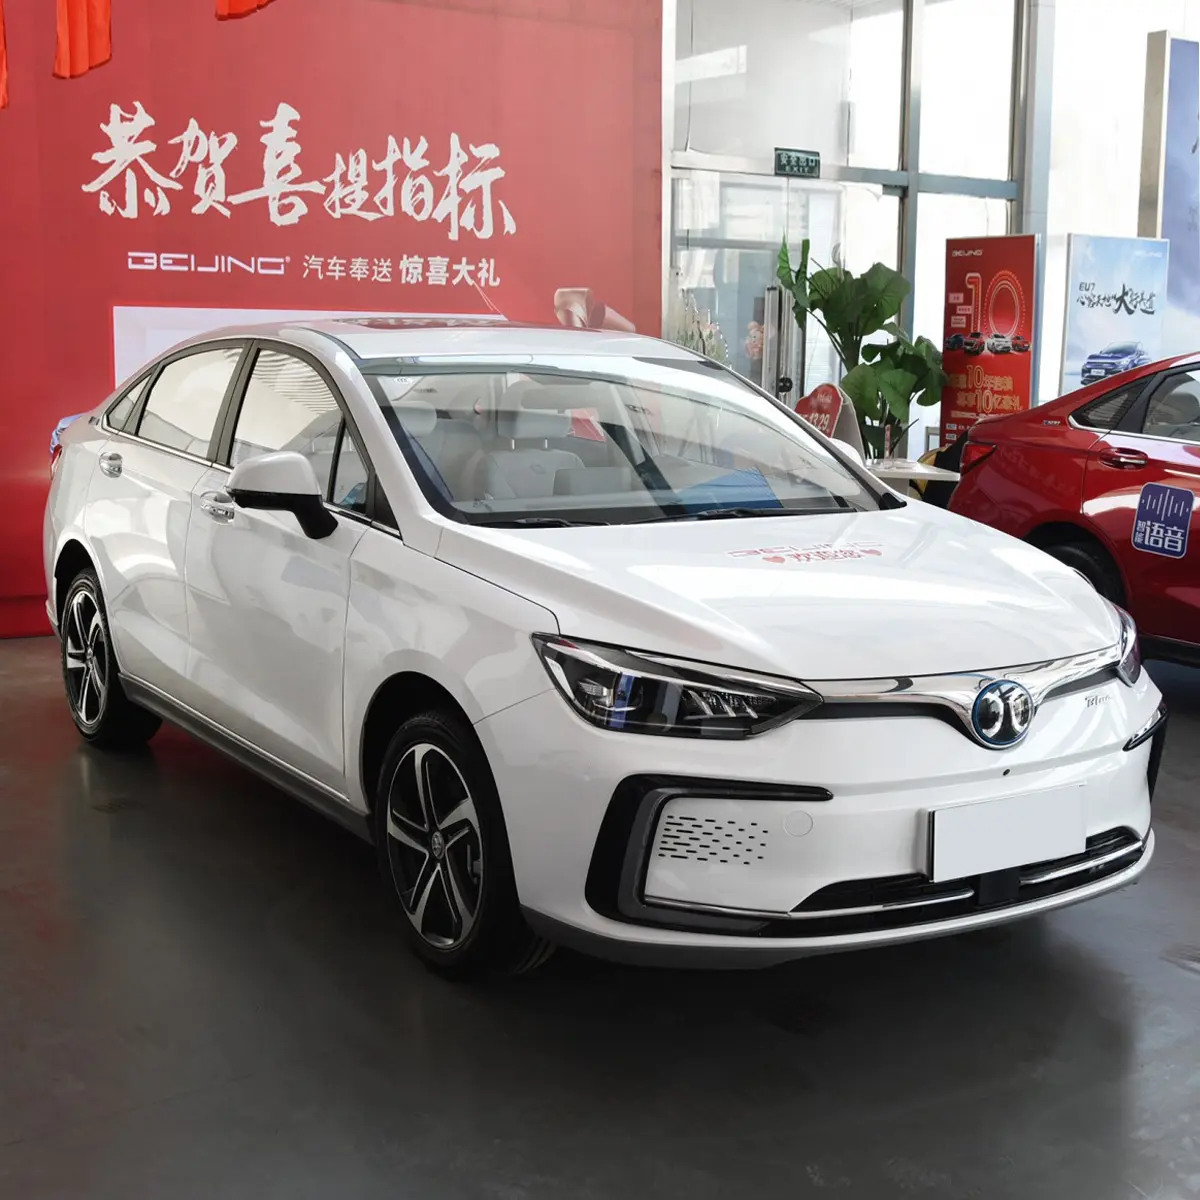 Baic Eu5 Beijing Eu5 автомобильные подержанные автомобили, новые энергетические автомобили, электромобили, электромобили, для продажи, Европа, из Китая